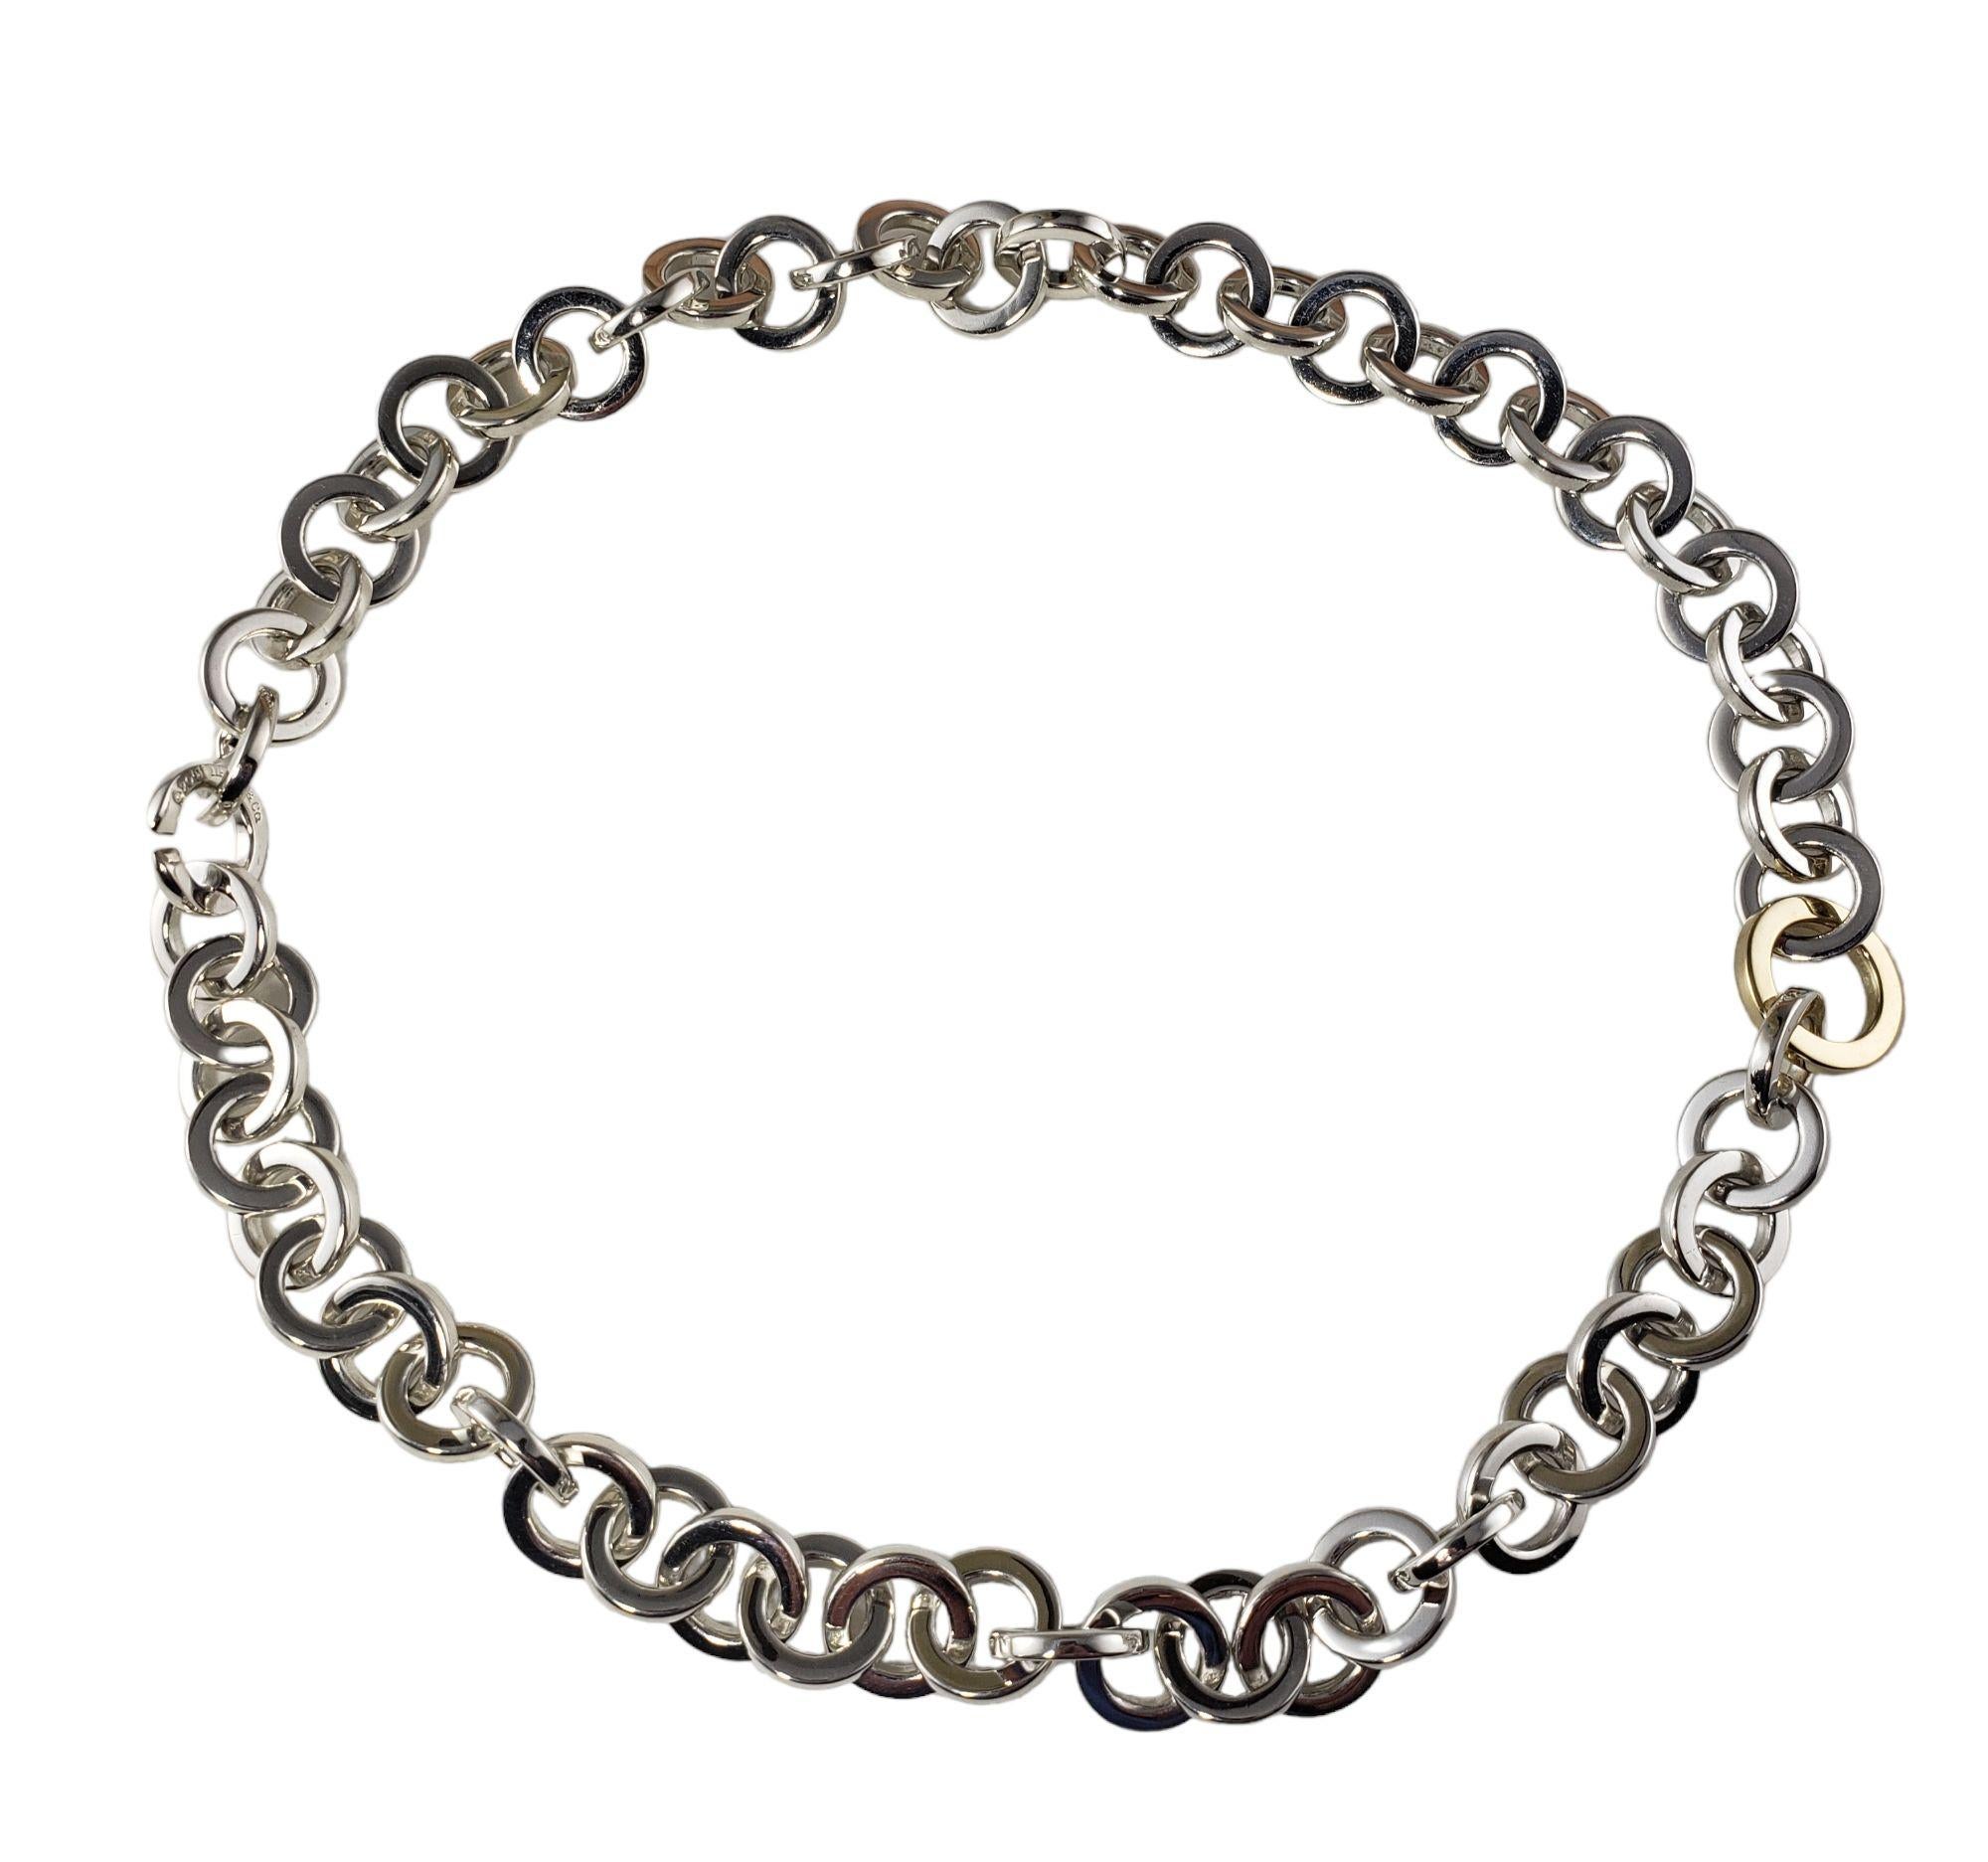 Tiffany & Co. Collier en argent sterling et or jaune 18 carats en forme de cercle ouvert.

Cet élégant collier de Tiffany & Co. est réalisé en argent sterling et en or jaune 18 carats. Largeur : 15 mm.

* Bracelet assorti : RL-00014283

Taille : 16